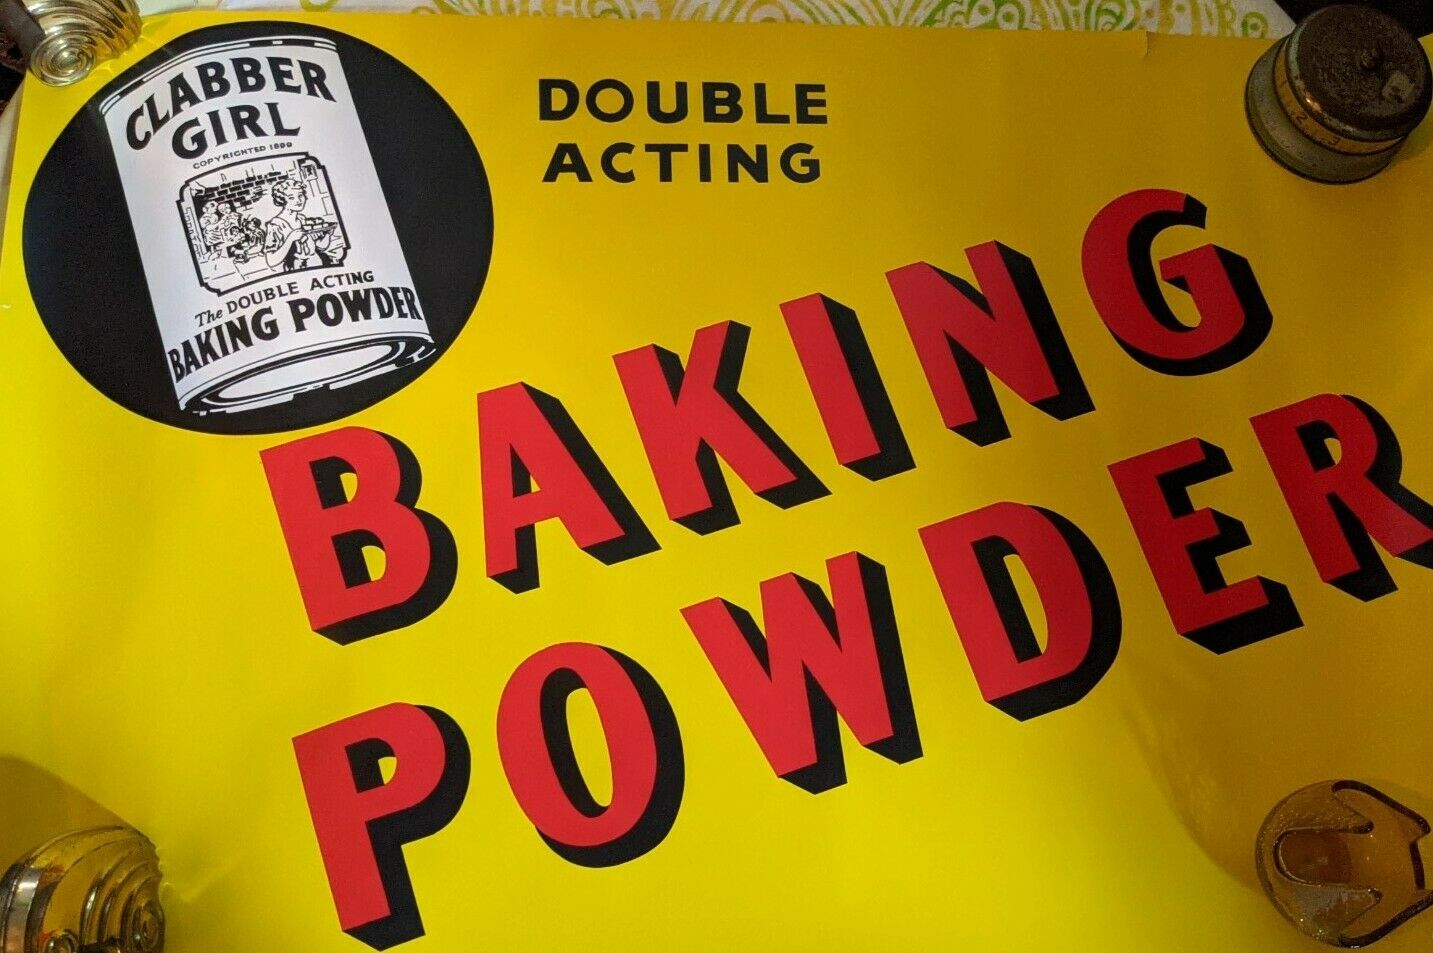 Nos Clabber Girl Baking Powder Double Acting Rare Antique Sign Poster Hulman Vtg